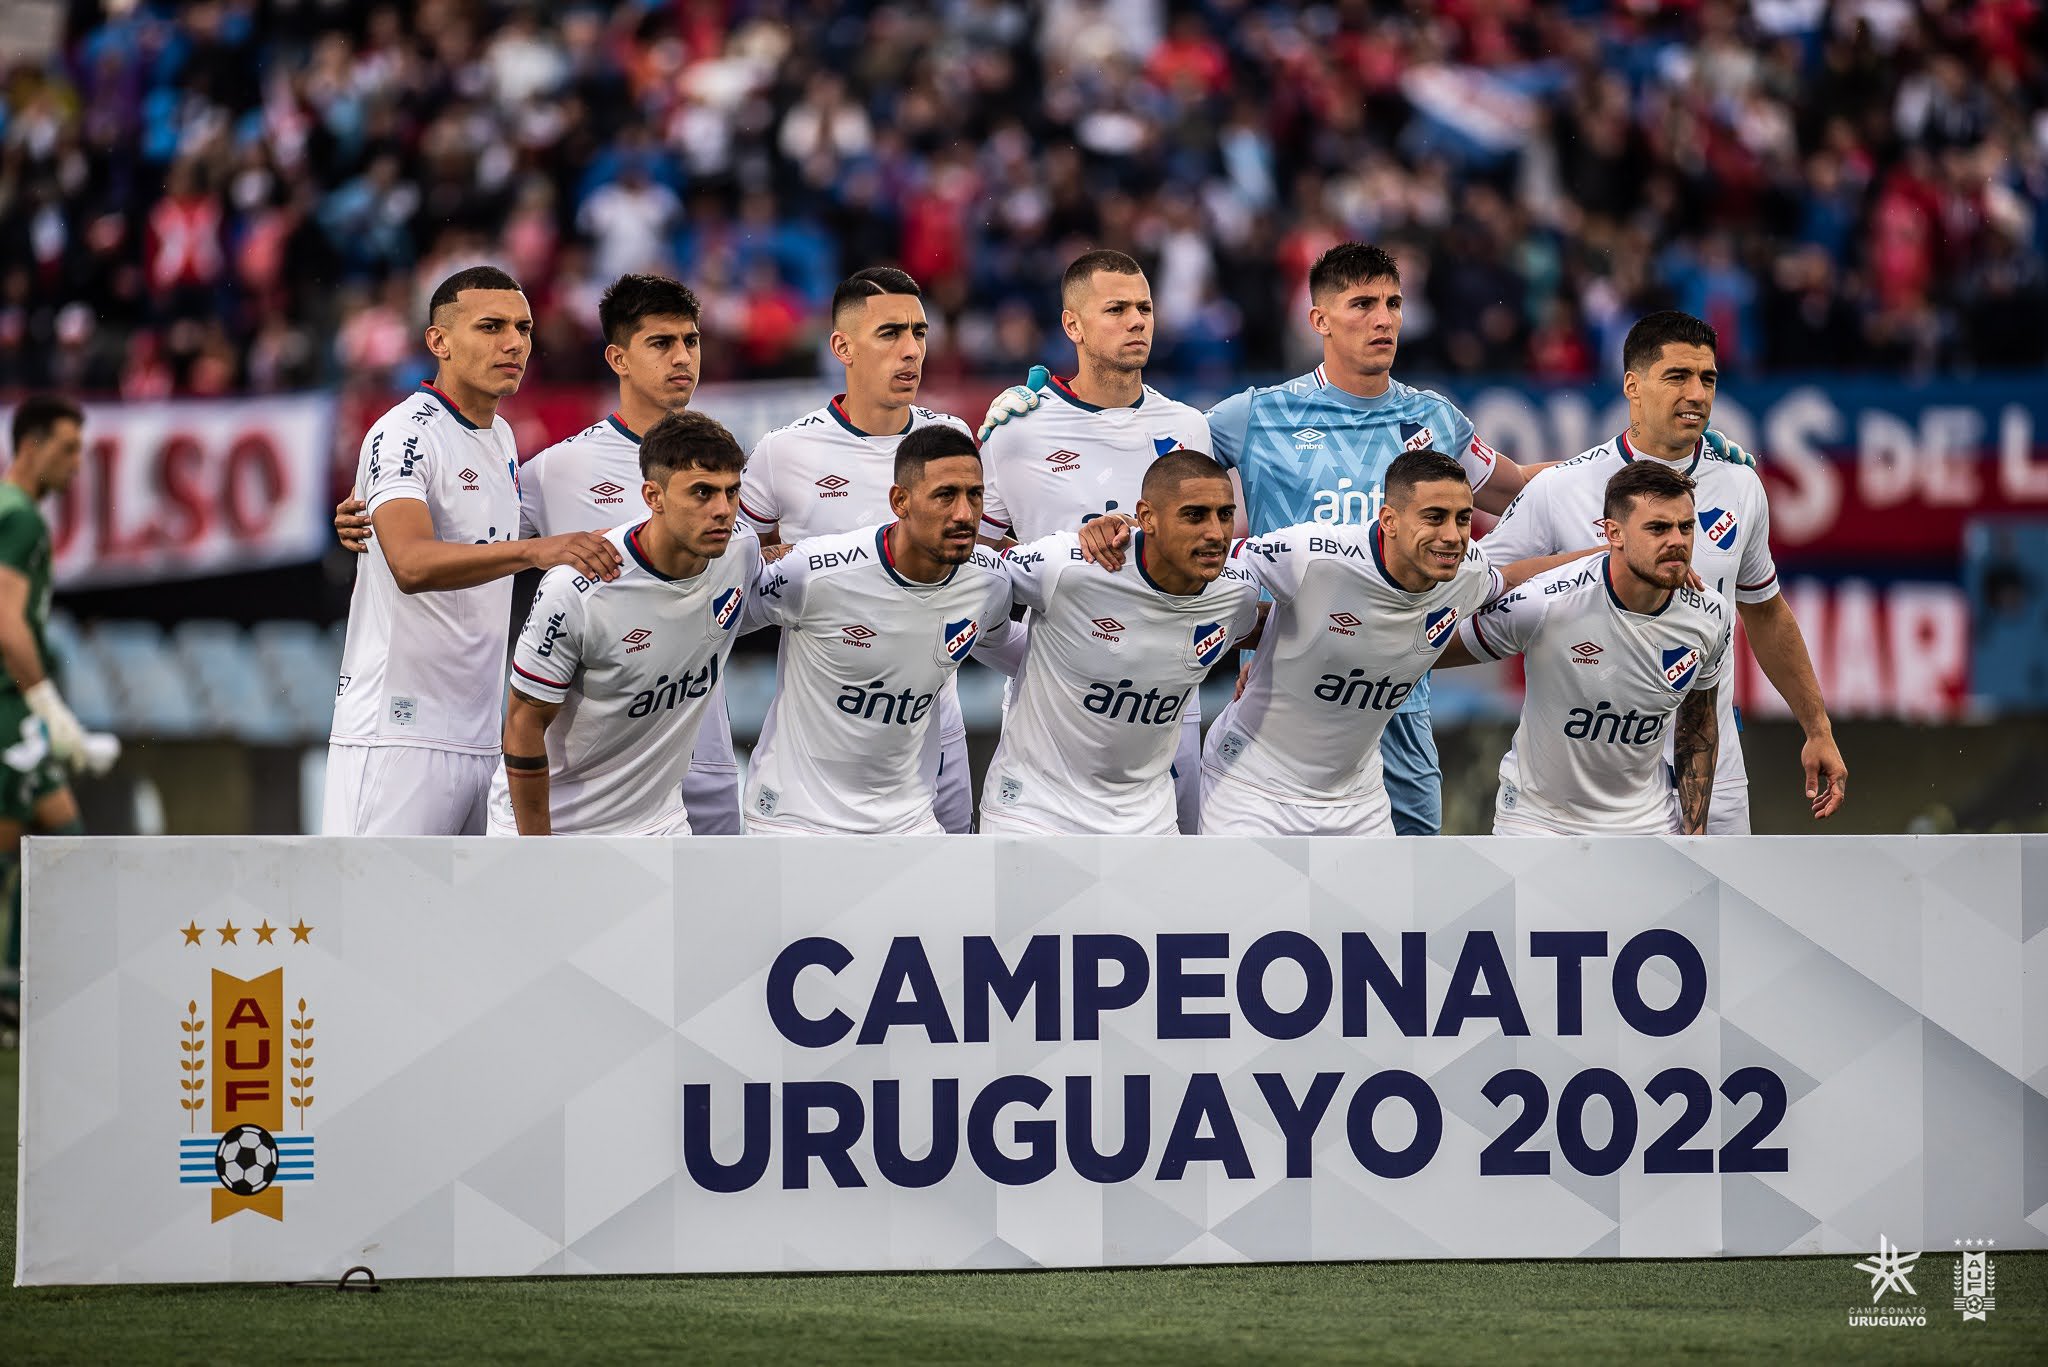 Artículos sobre Campeonato Uruguayo 2022